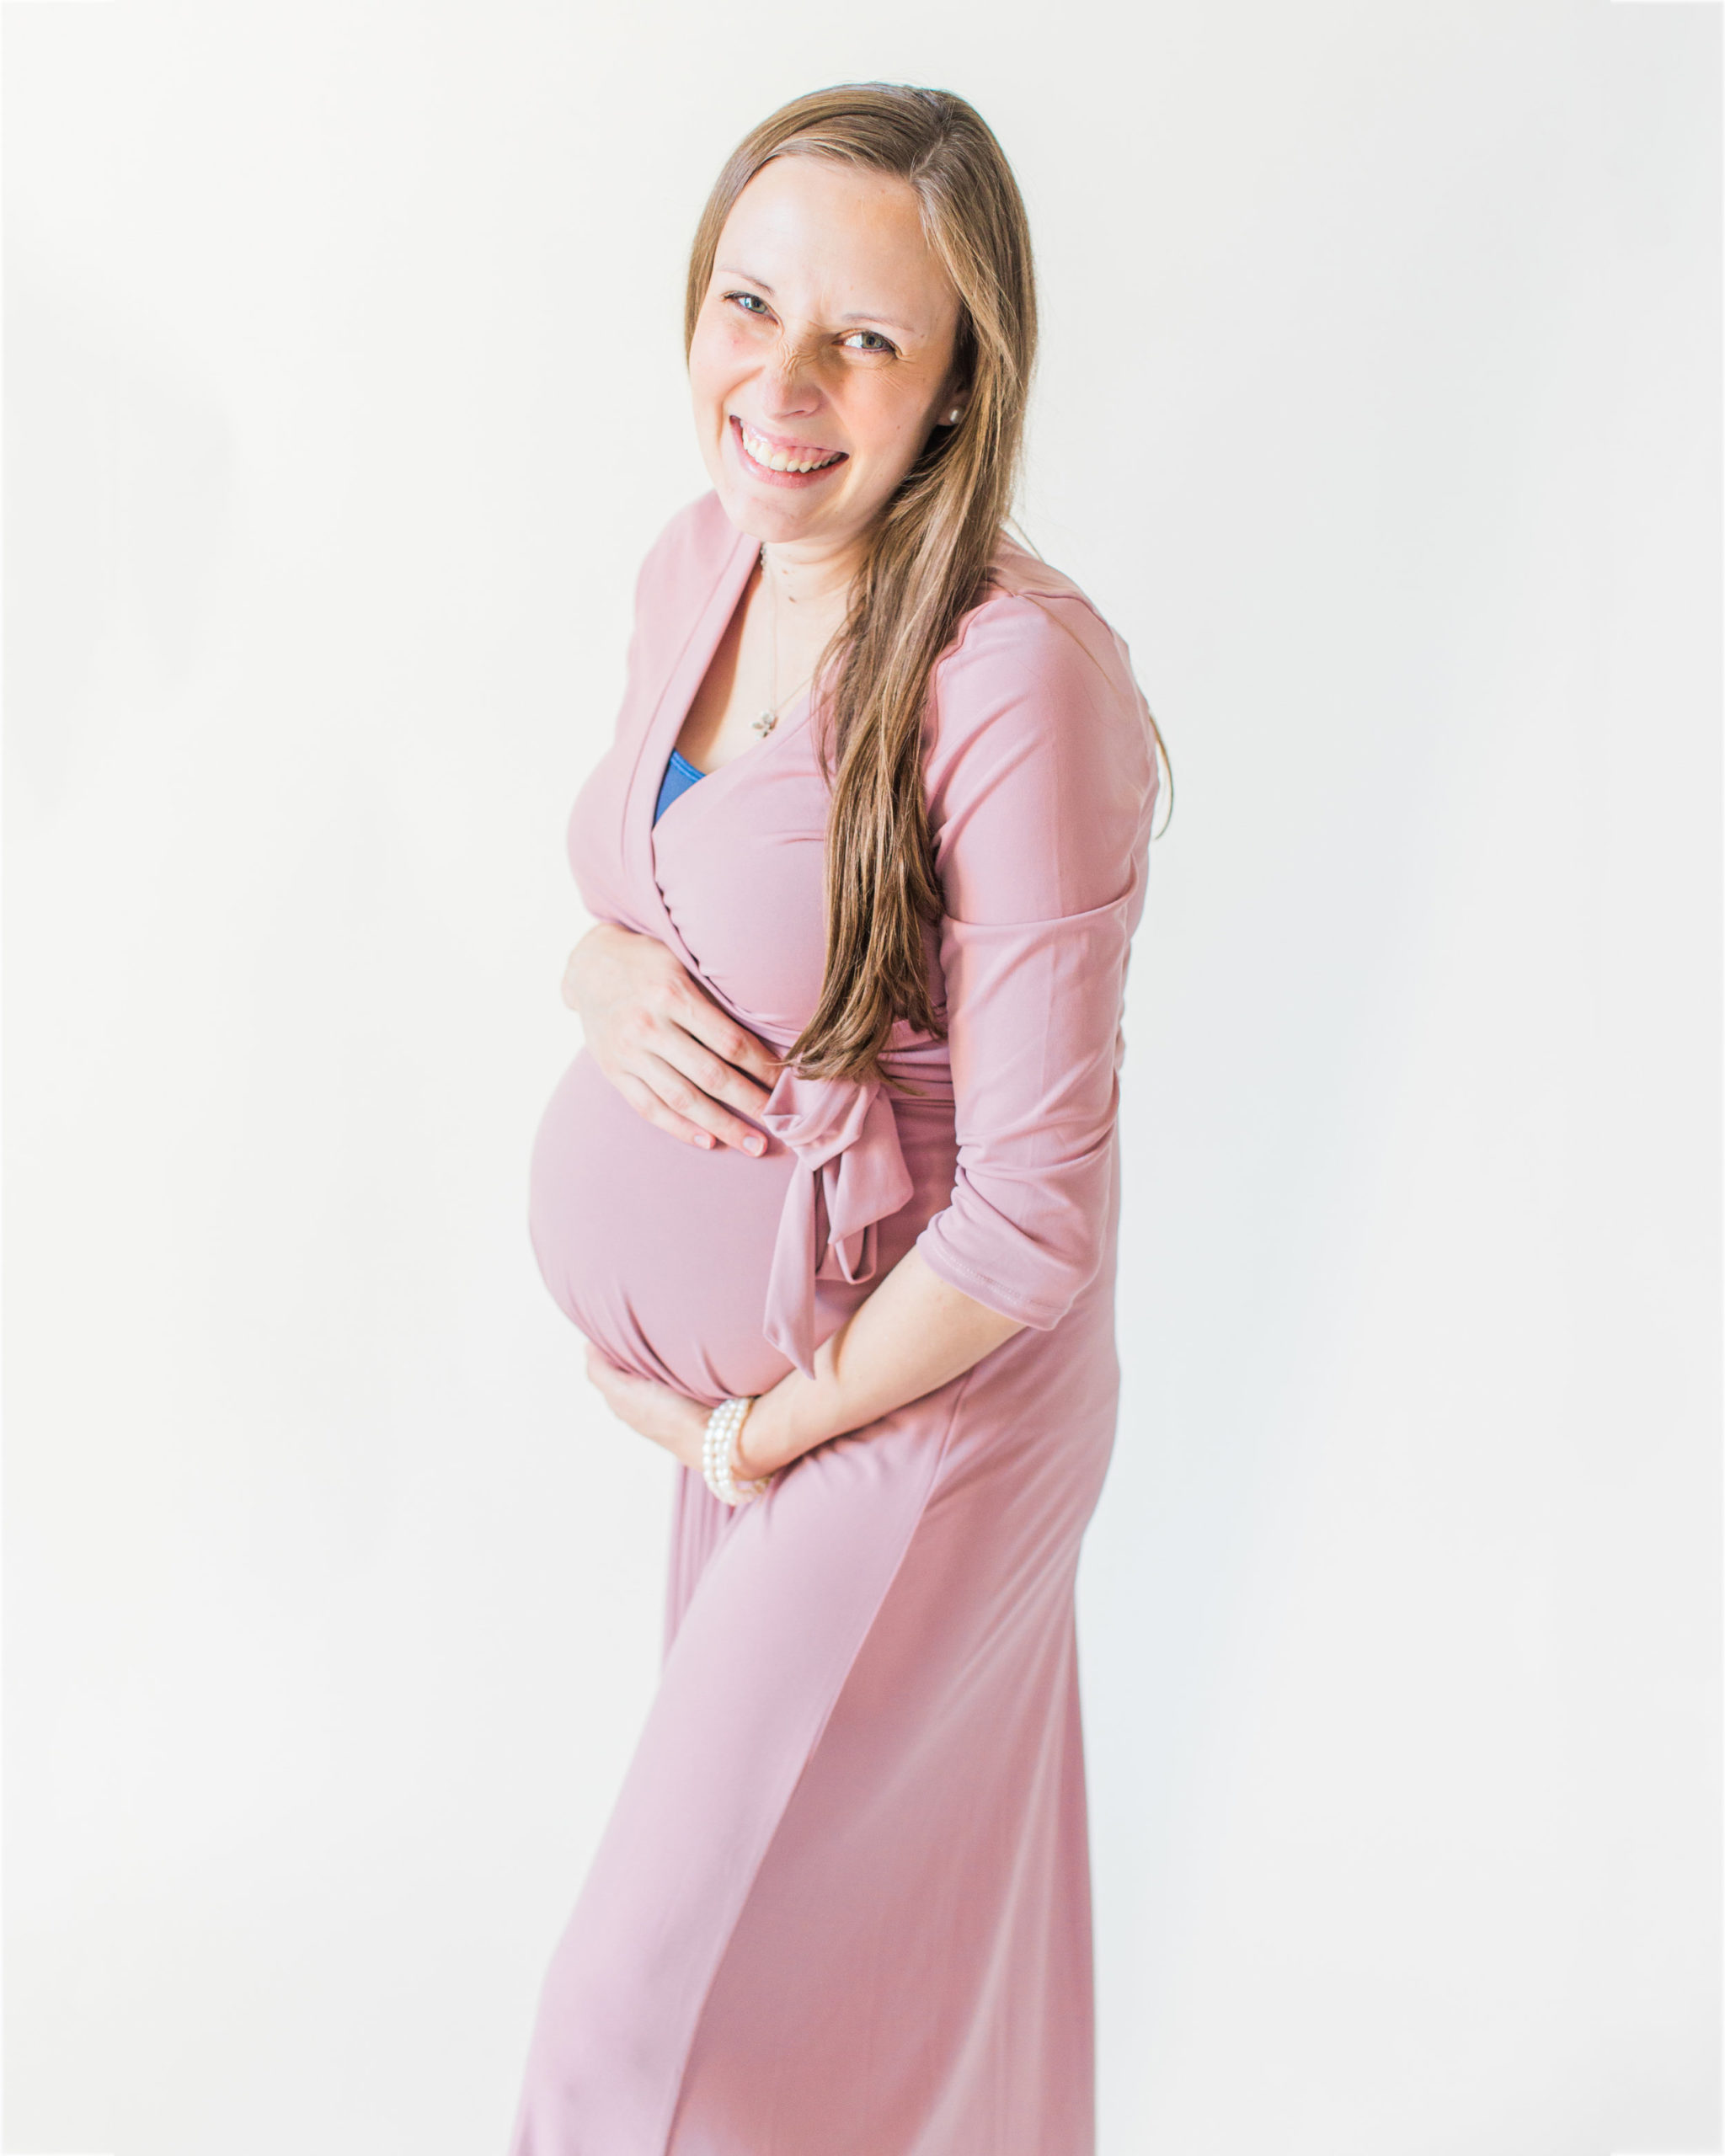 Joyful maternity photographer